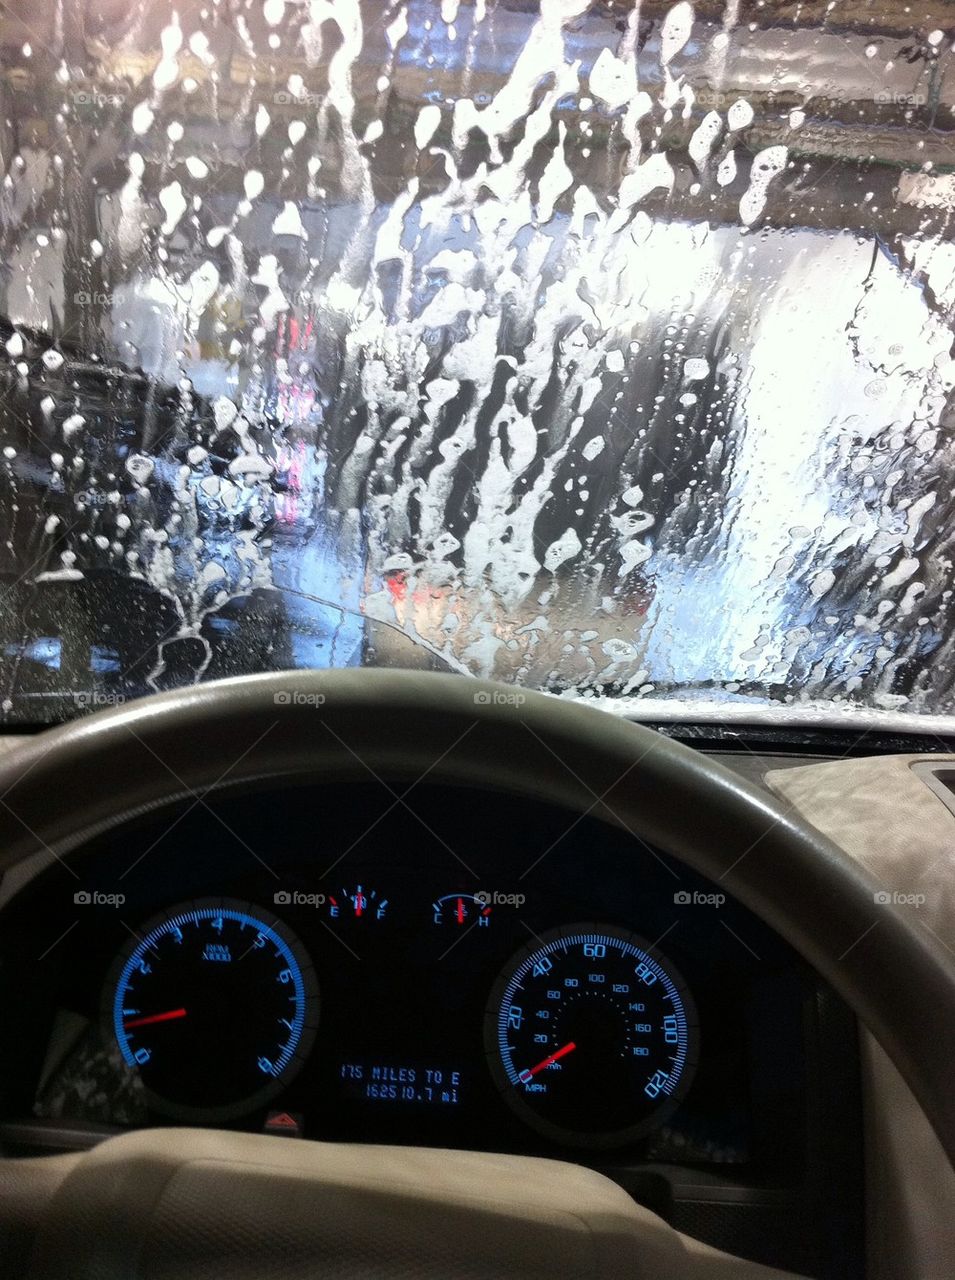 At the car wash, yeah!